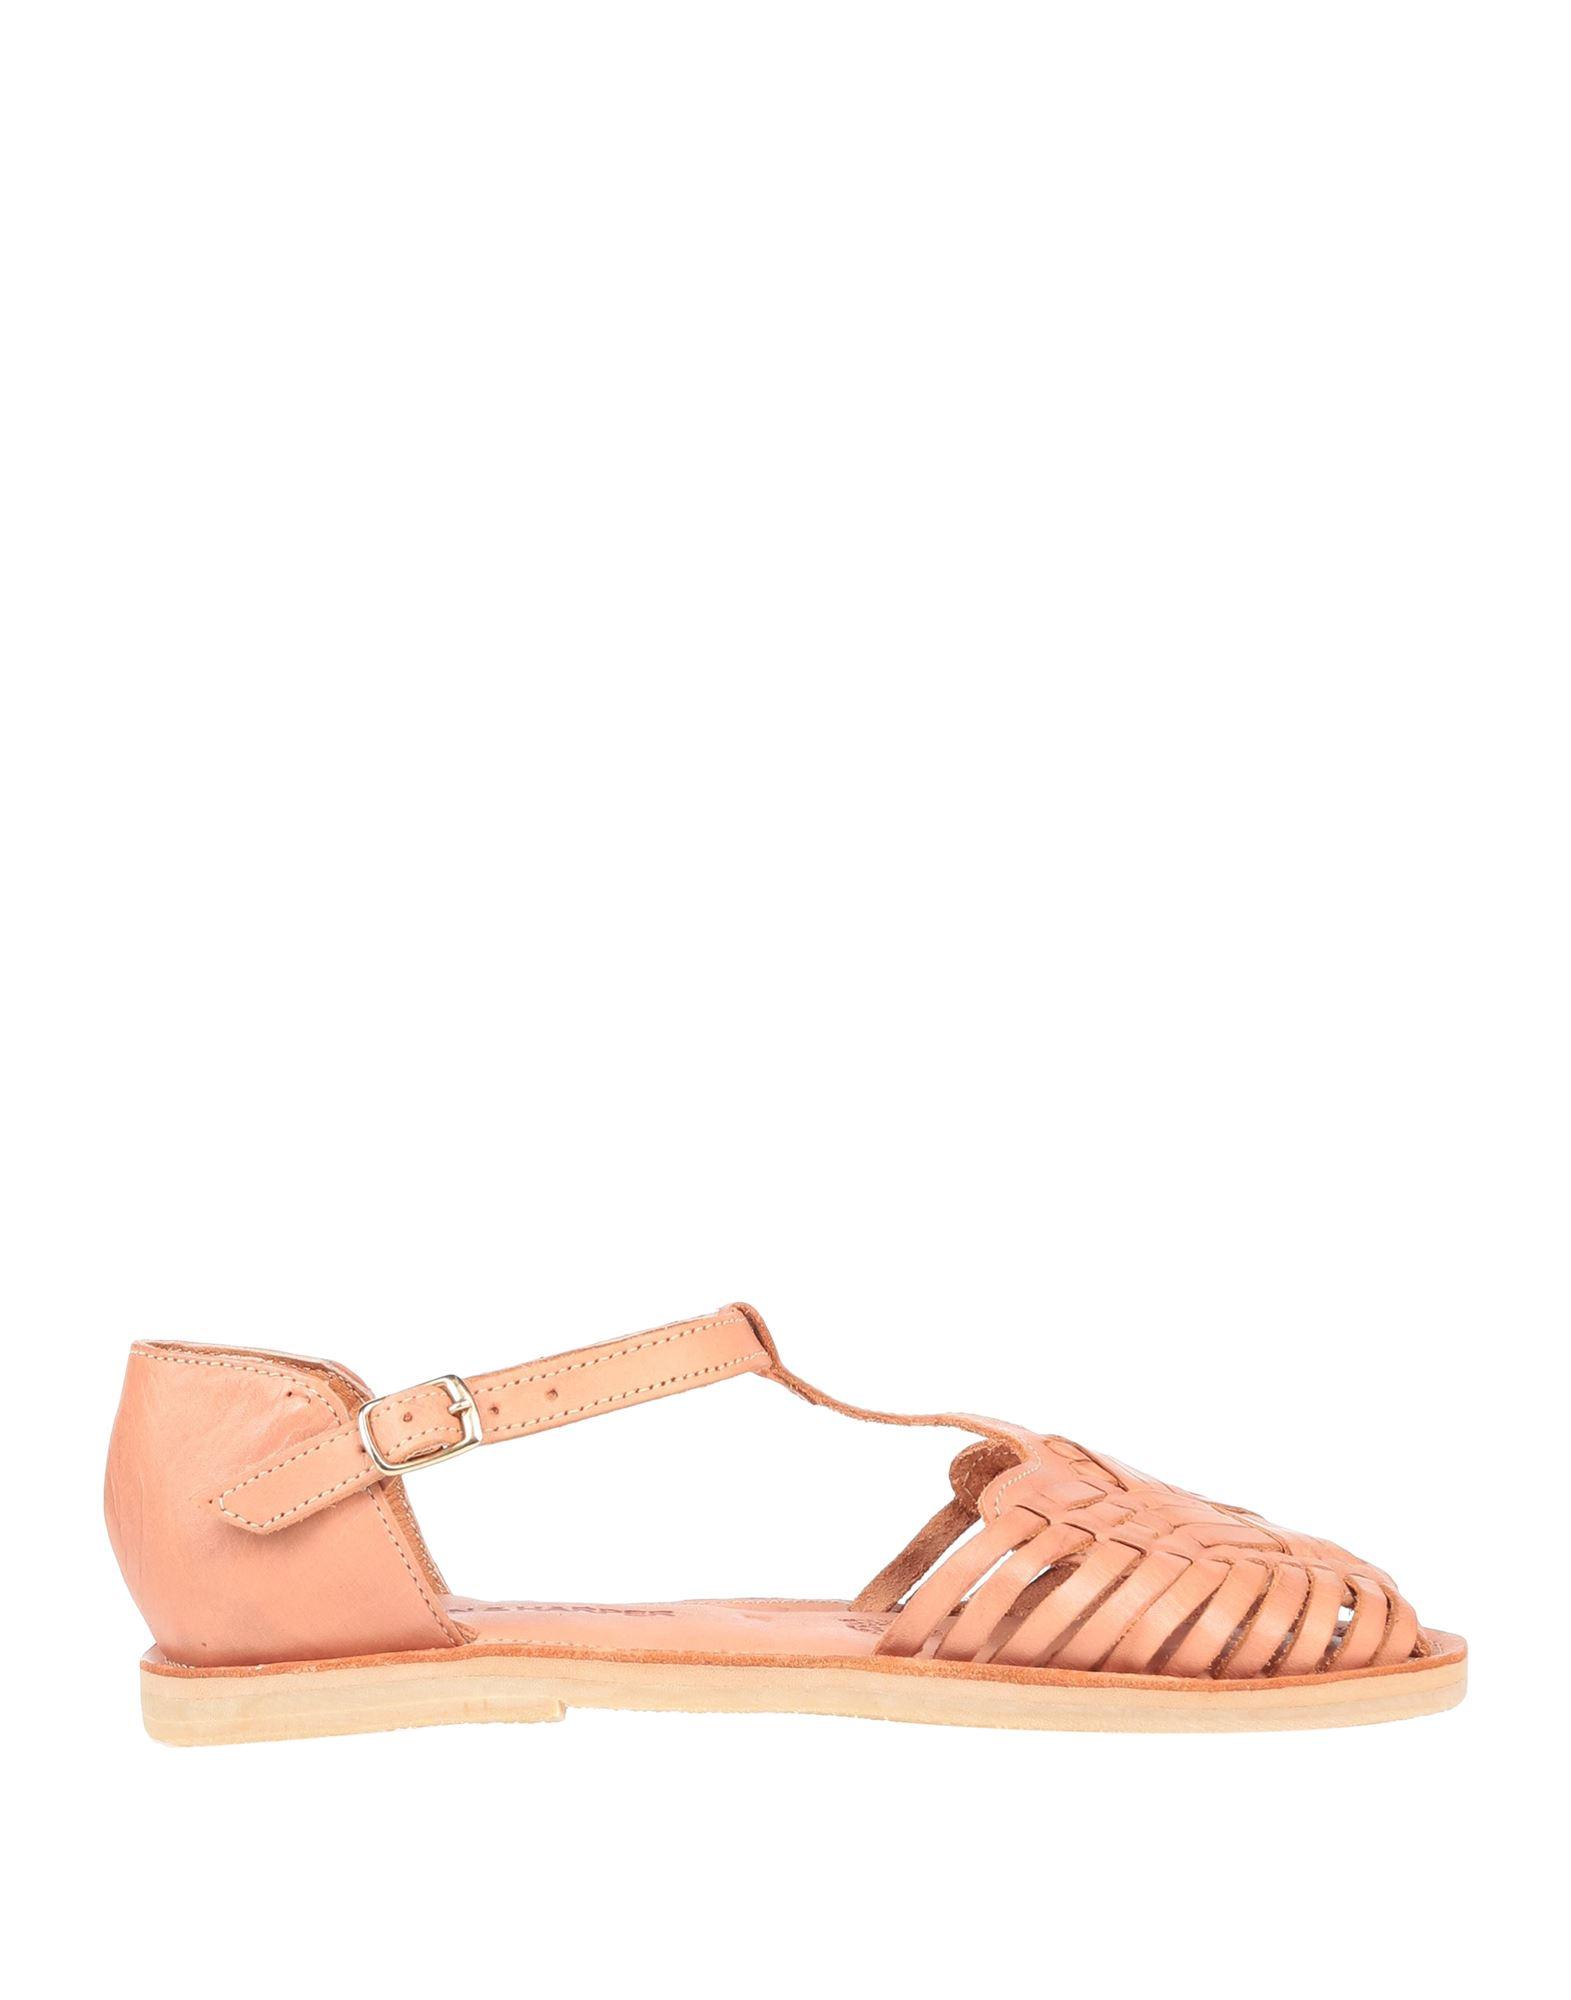 Leon & Harper Sandals in Pink | Lyst